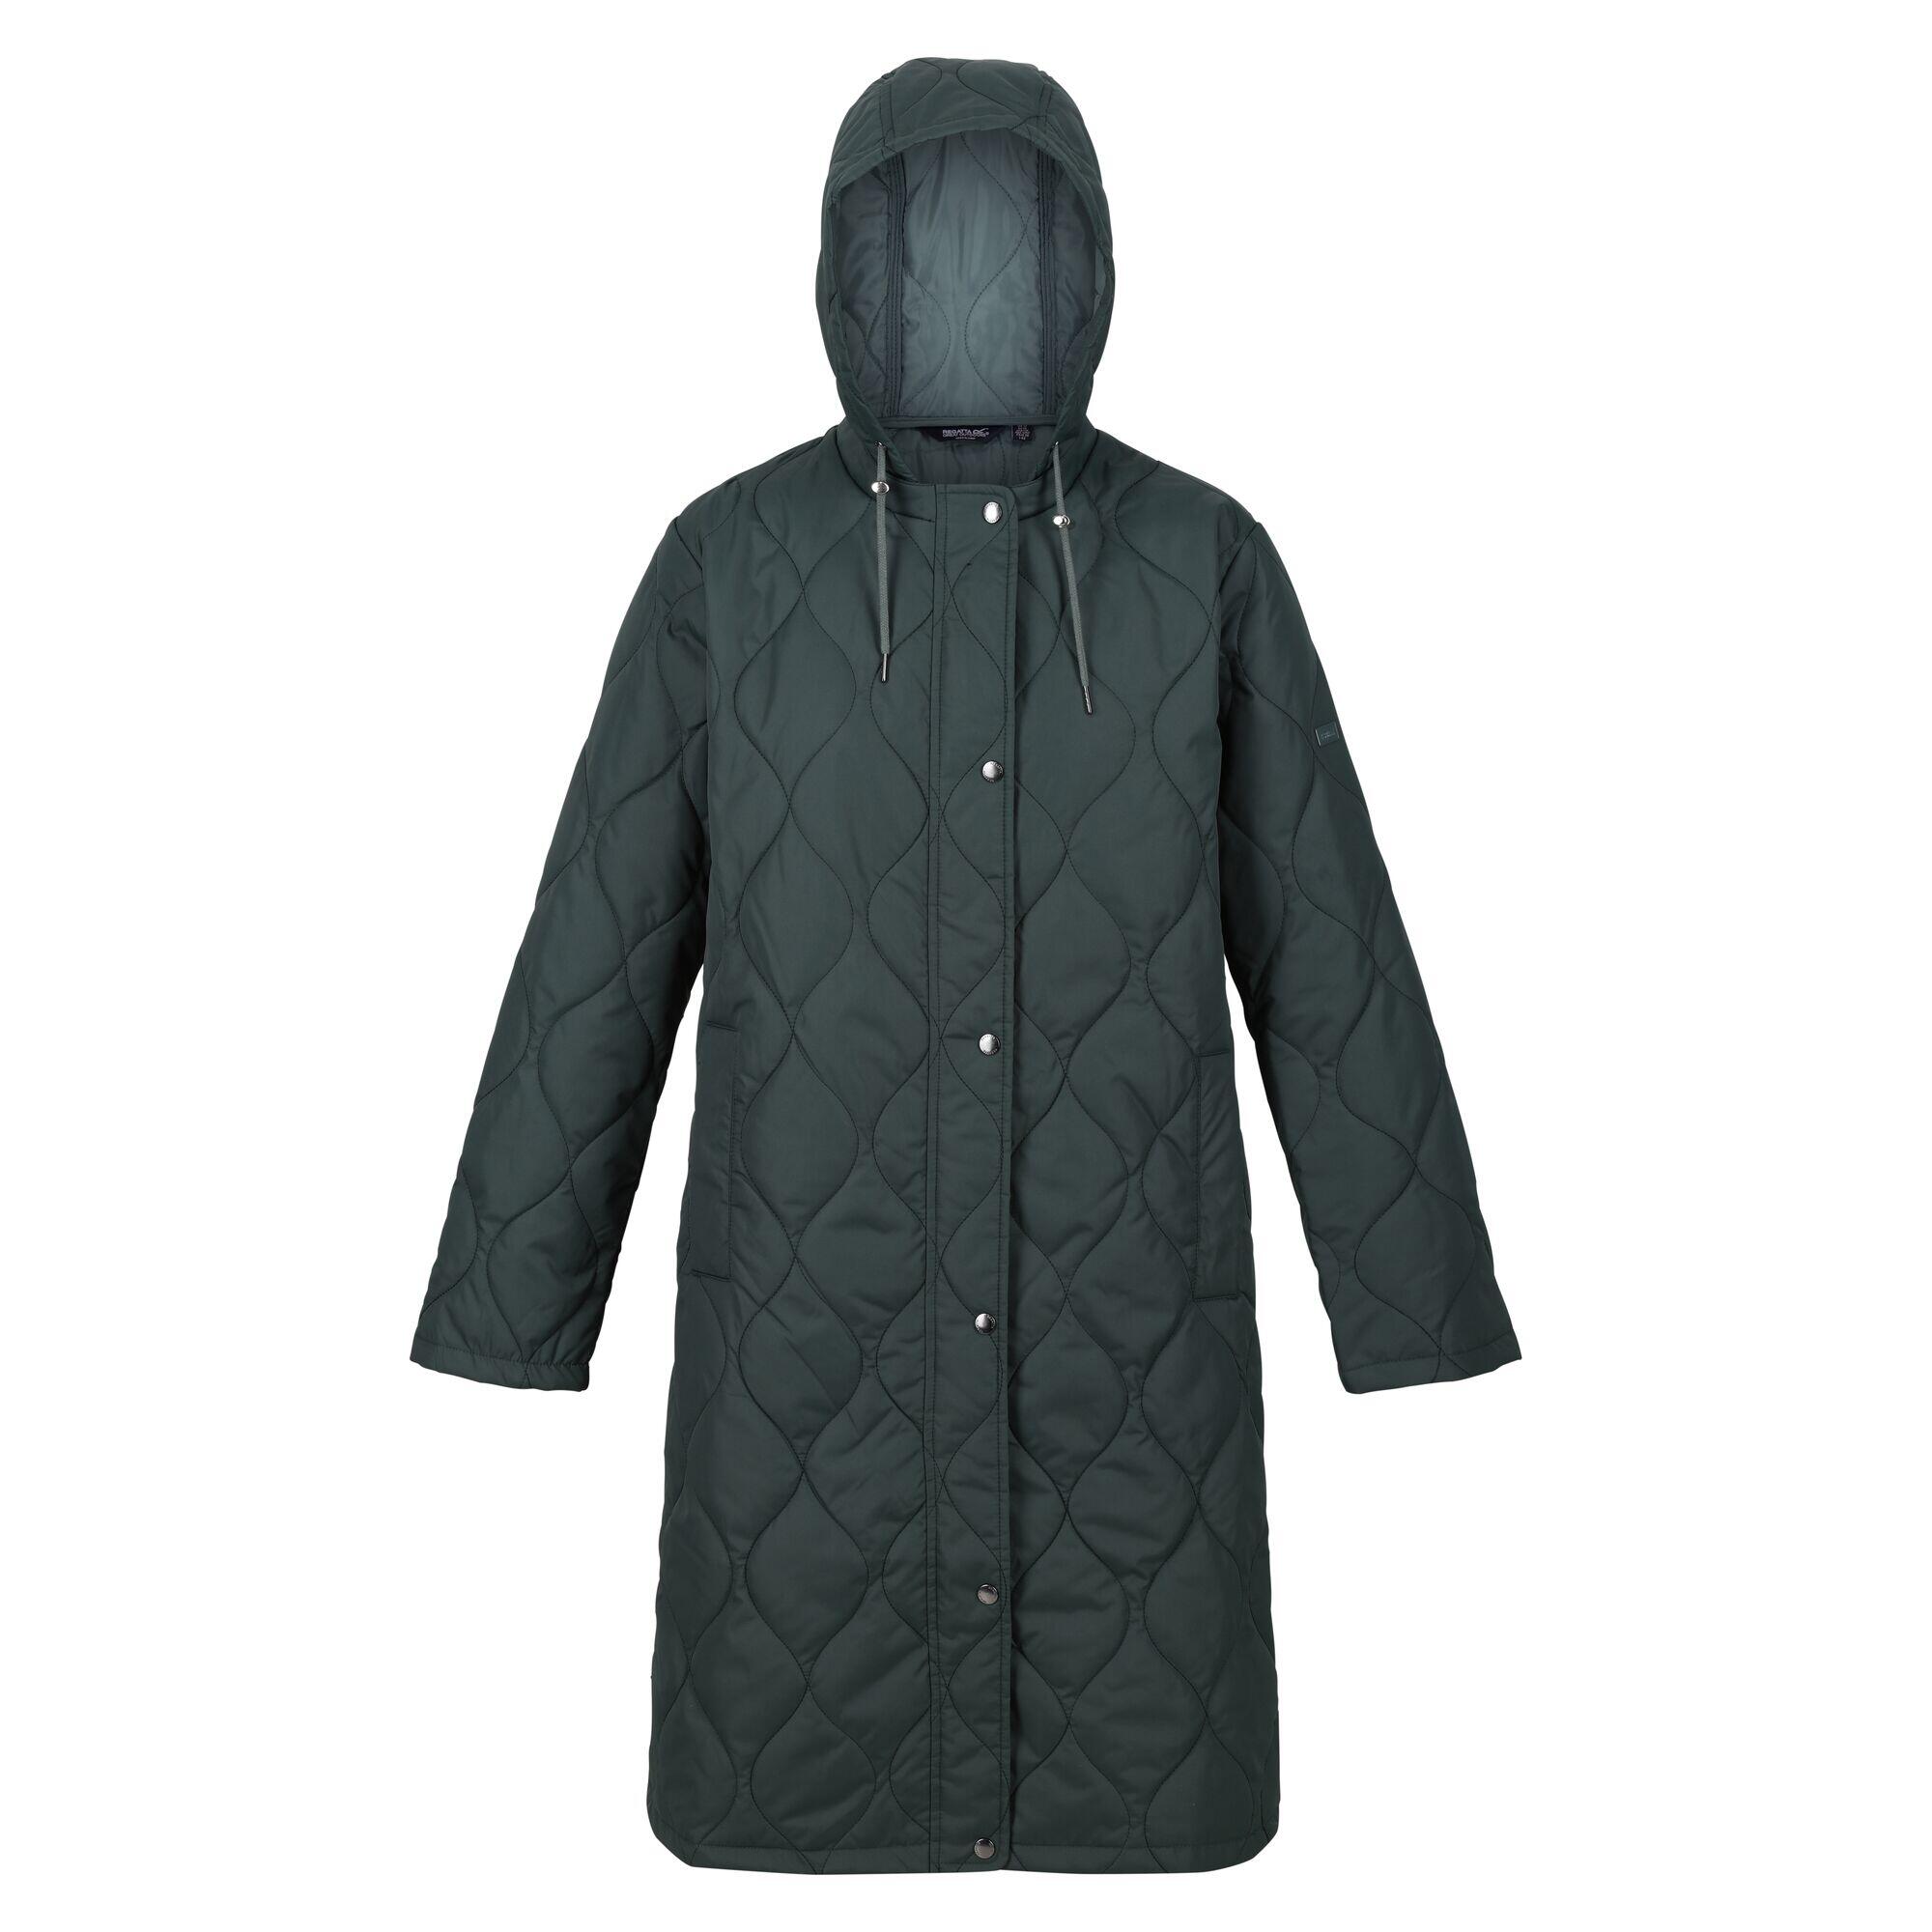 REGATTA Womens/Ladies Jaycee Quilted Hooded Jacket (Darkest Spruce/Dark Forest Green)